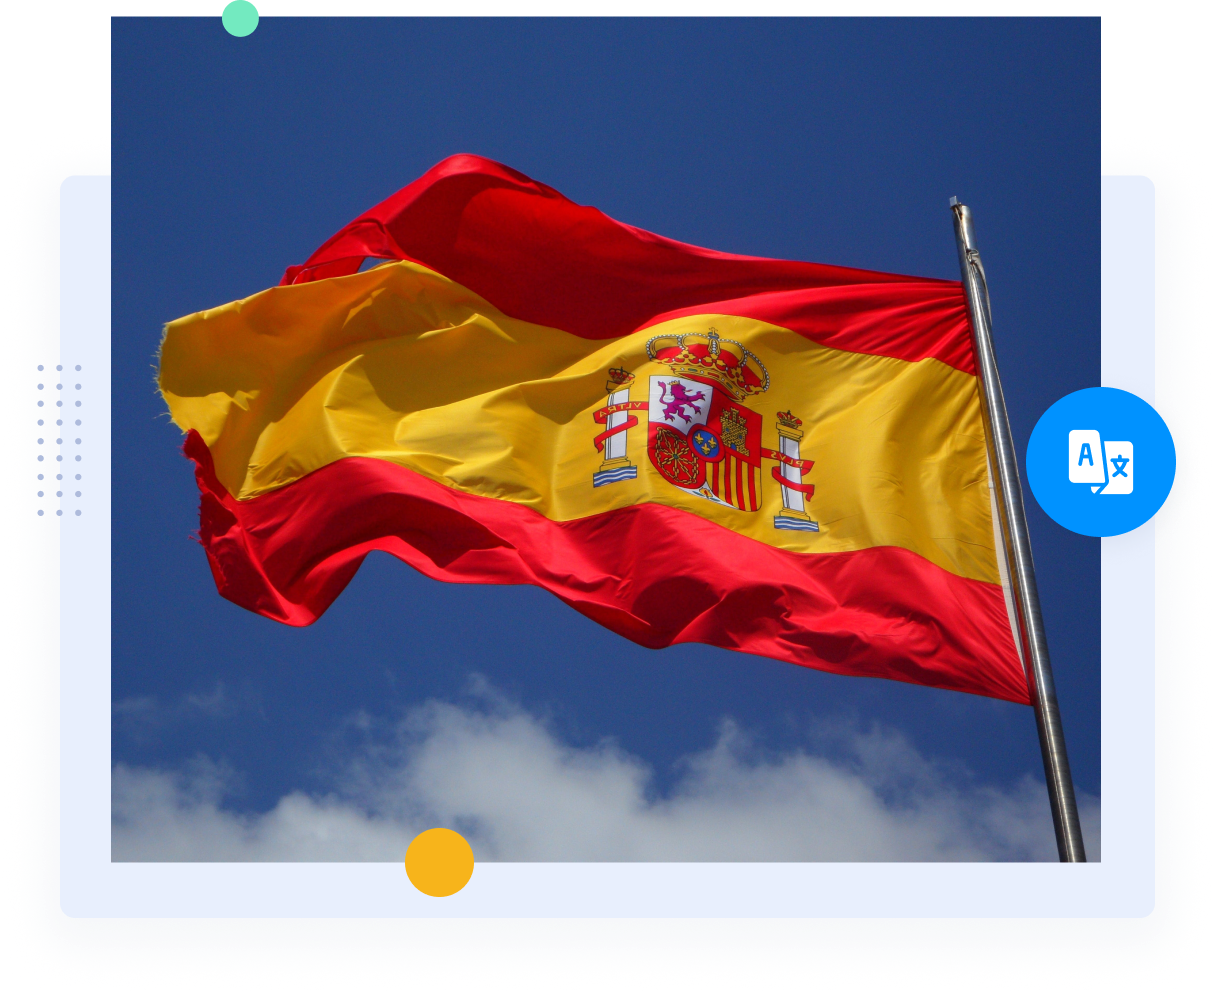 العلم الأحمر والأصفر لإسبانيا الذي يمثل المترجمين الإسبان المحترفين وخدمات الترجمة.